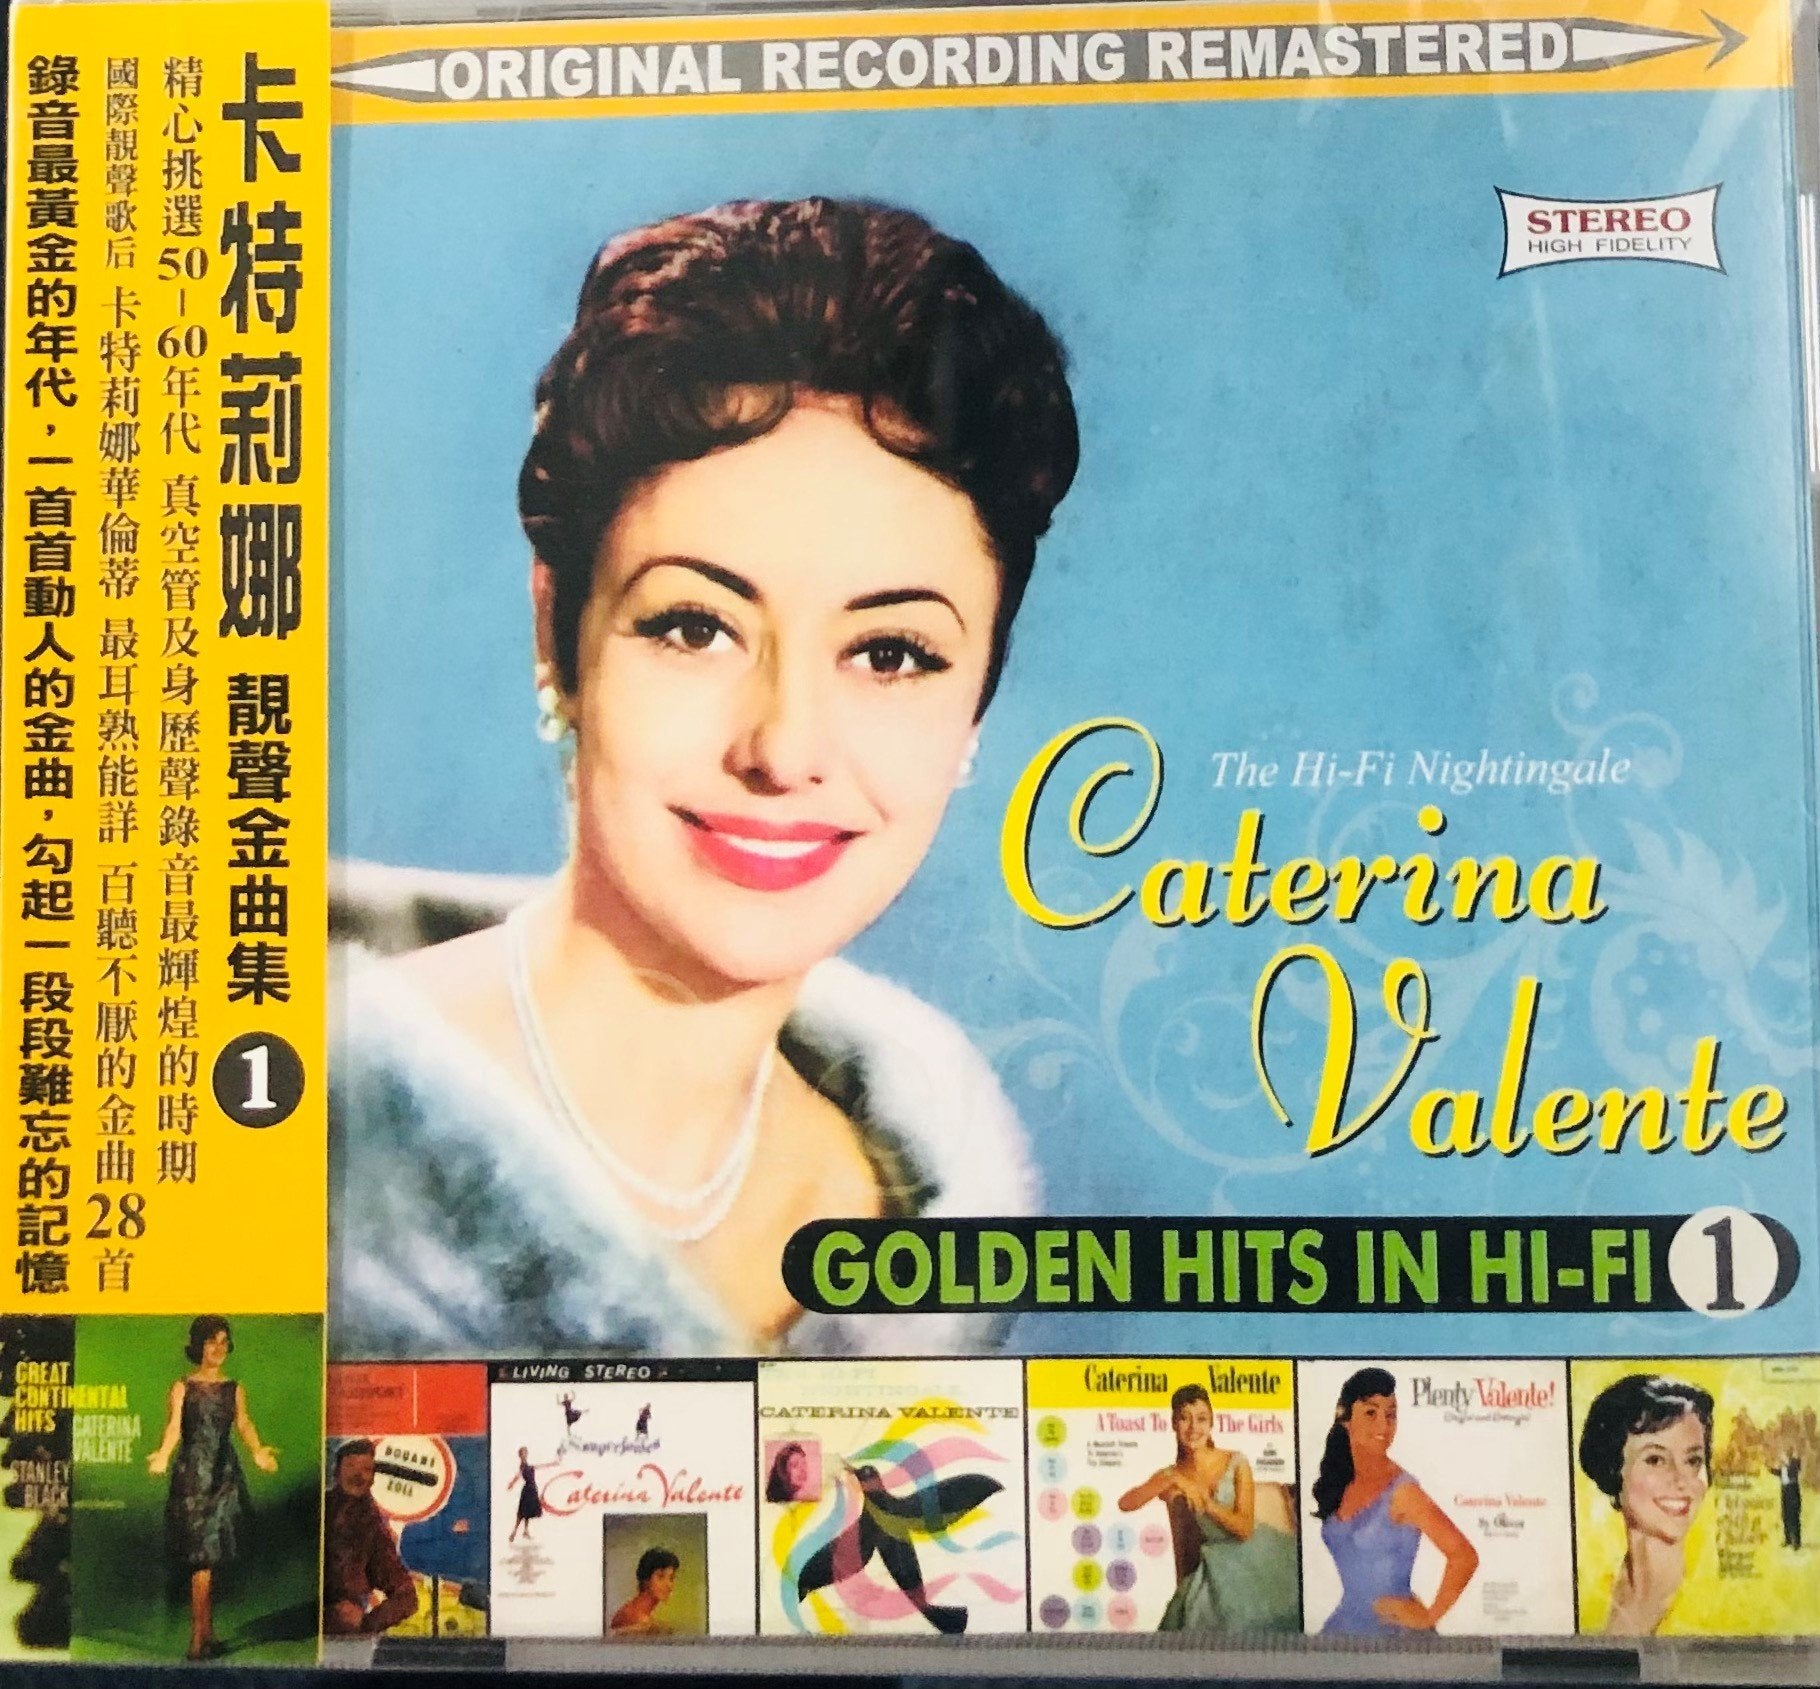 CATERINA VALENTE - GOLDEN HITS IN HI-FI VOL 1 (CD)